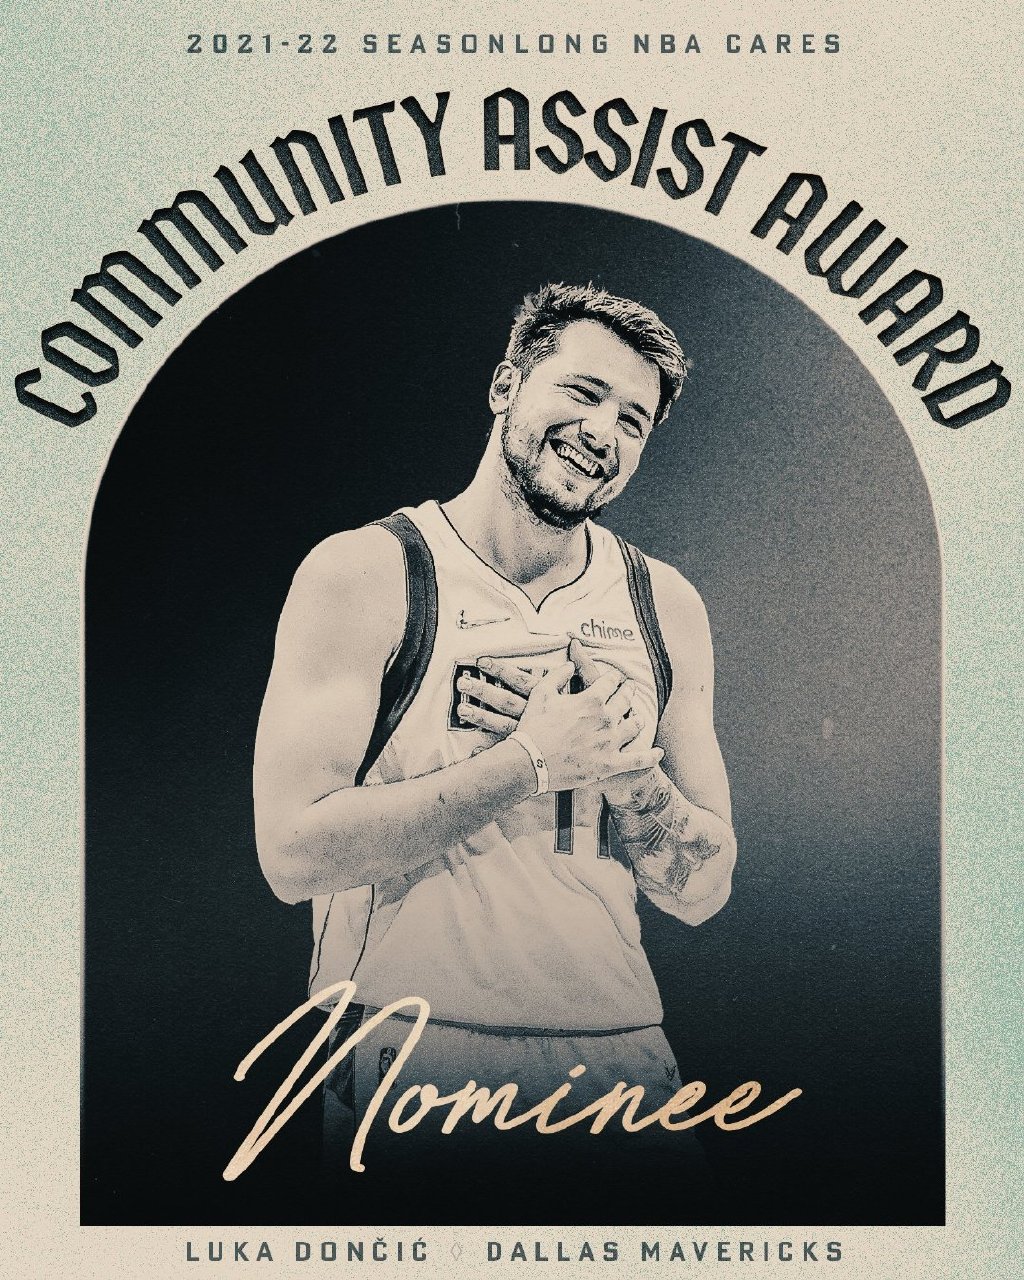 东契奇赢得了NBA的社区协助奖。